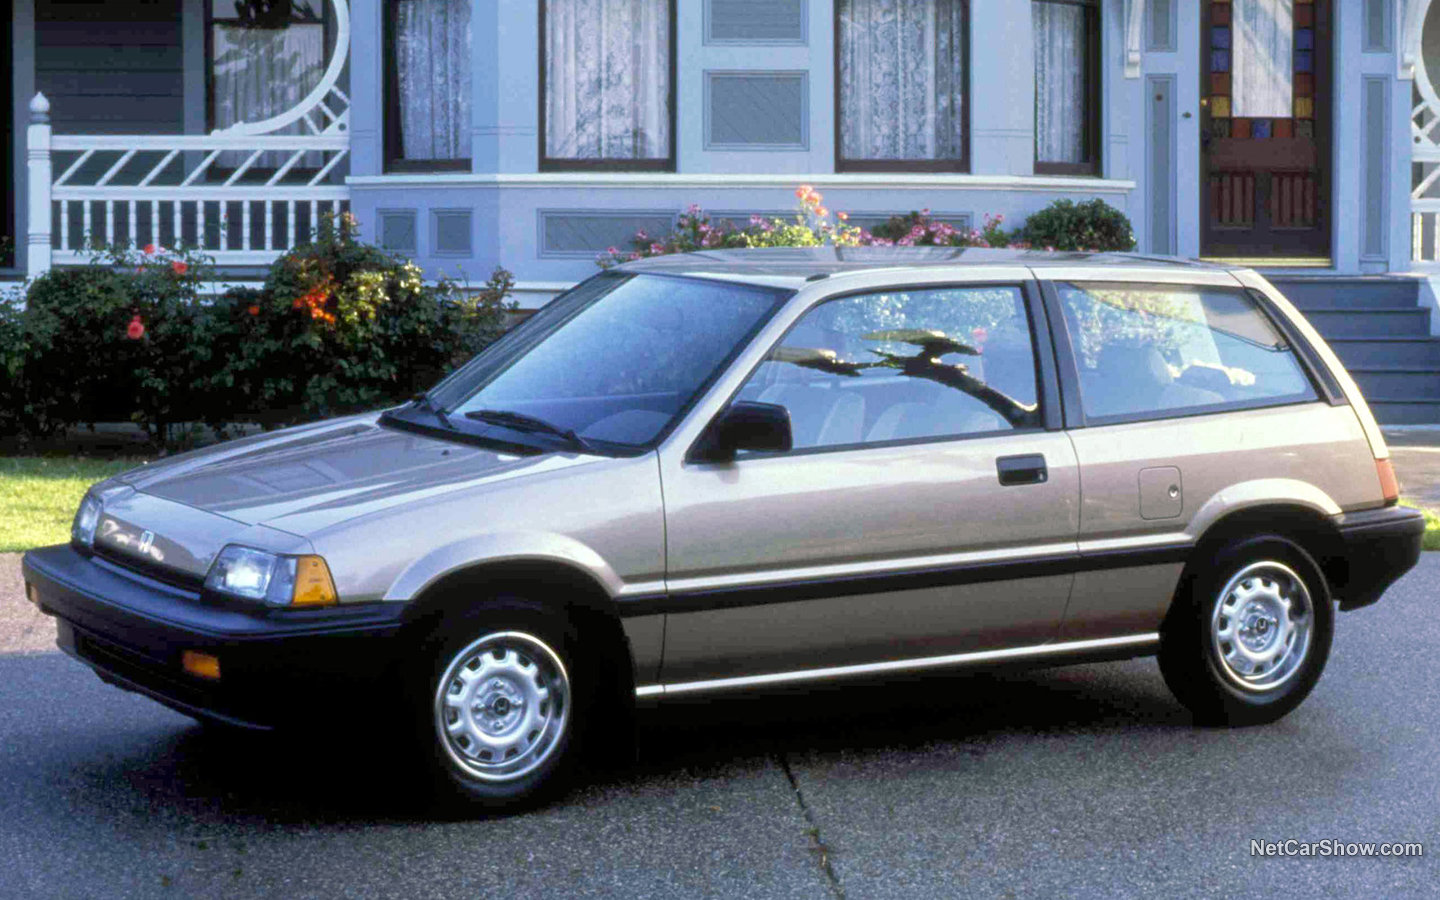 Honda Civic Hatchback 1985 4e8e57e4